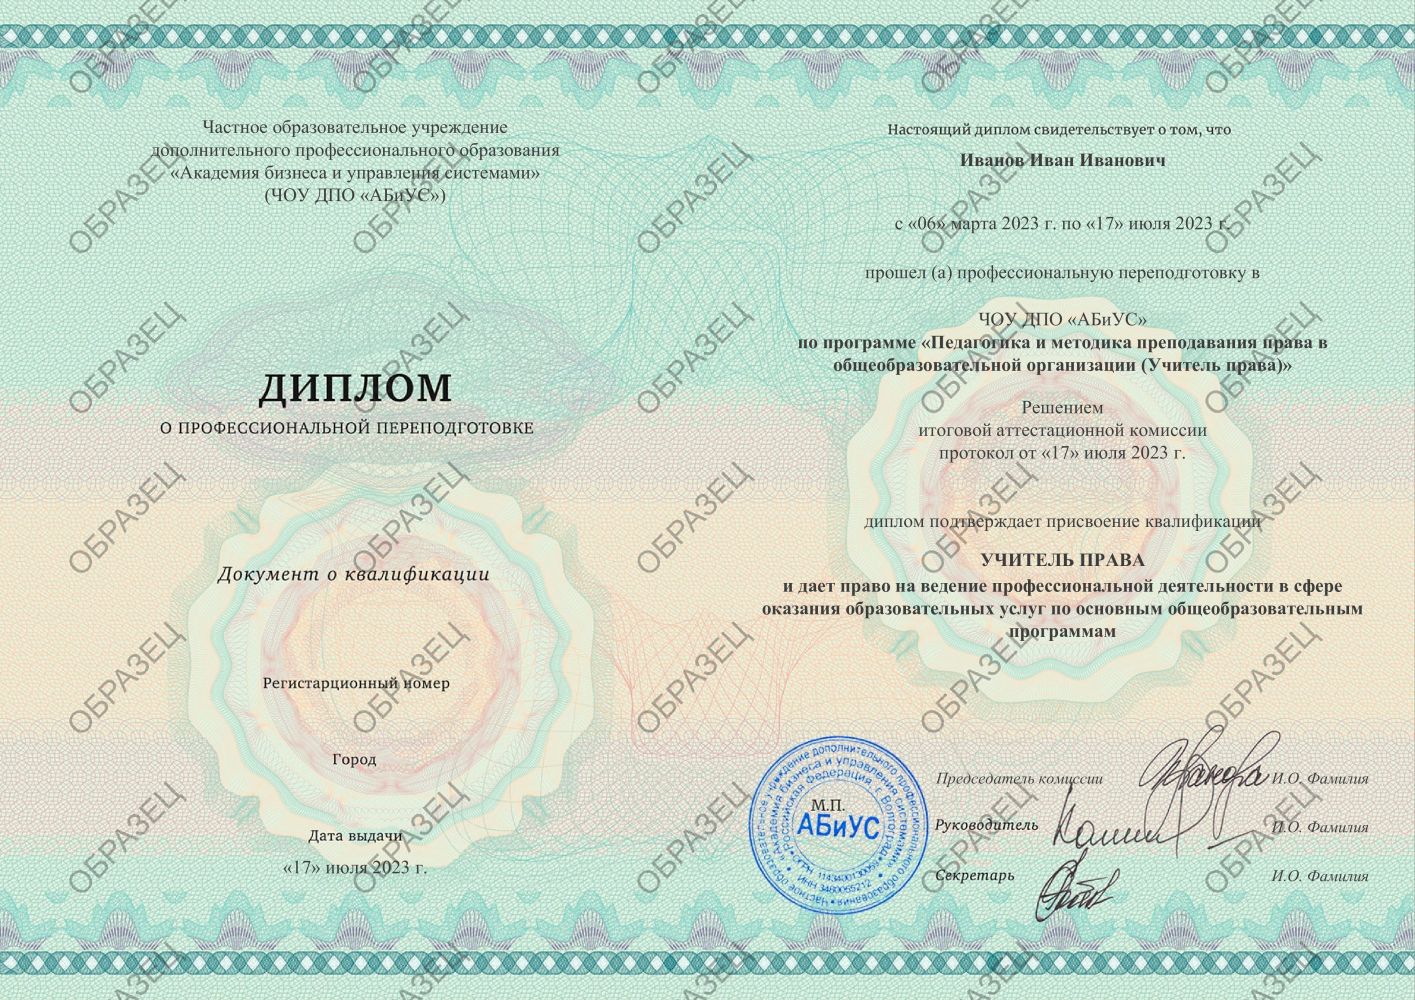 Диплом Педагогика и методика преподавания права в общеобразовательной организации (Учитель права) 510 часов 8750 руб.